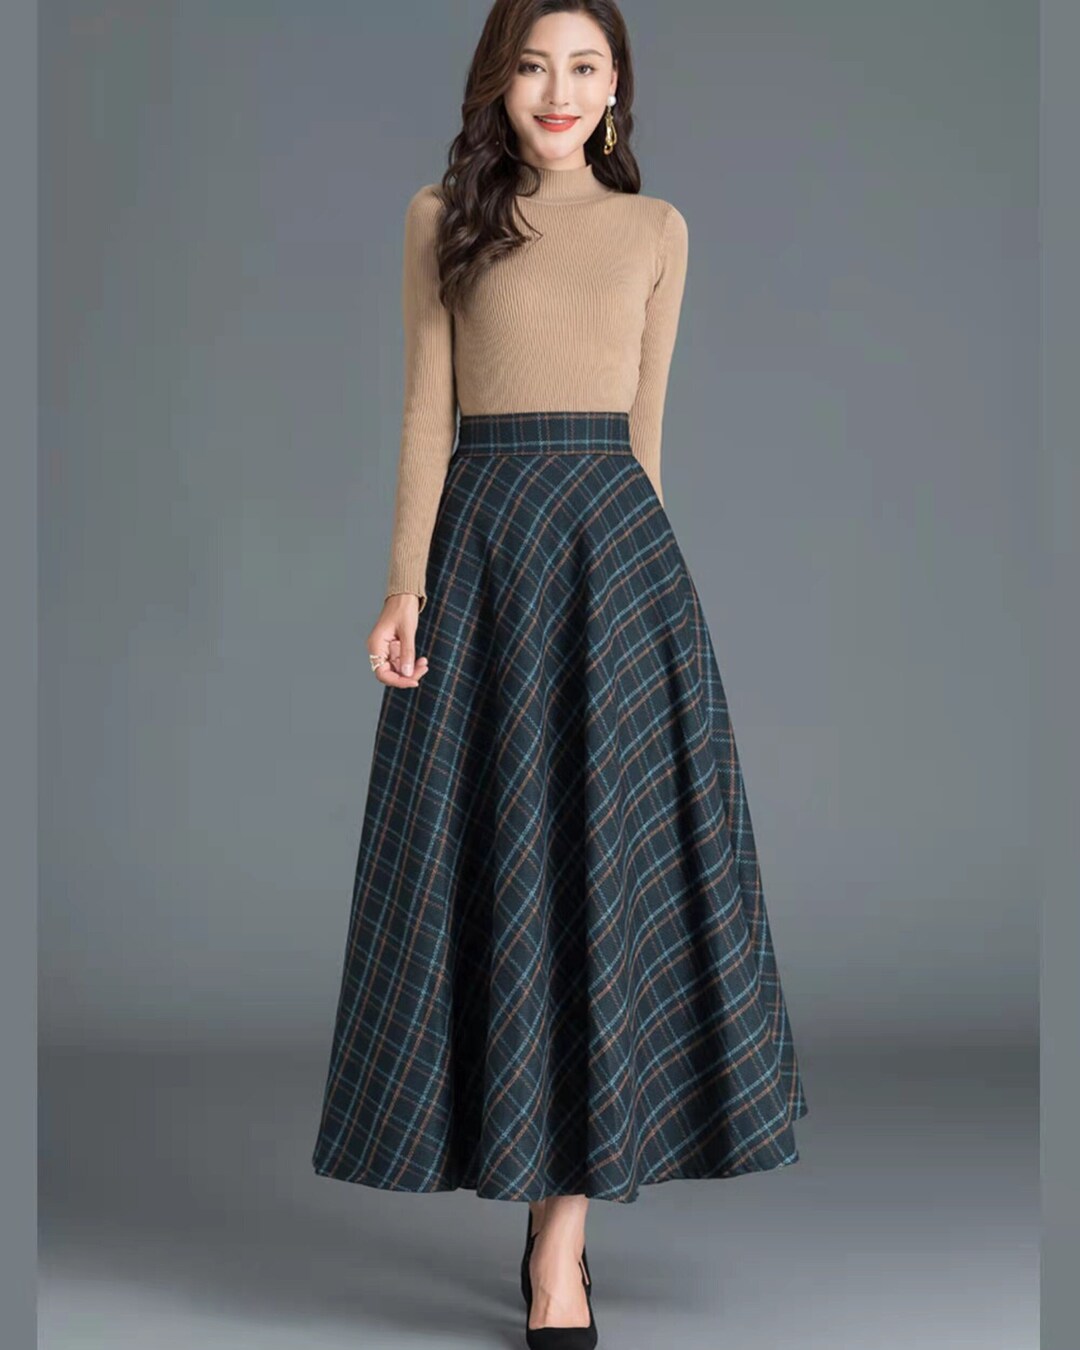 Plaid Skirt Winter Skirt Wool Skirt Black Skirt Long Wool - Etsy